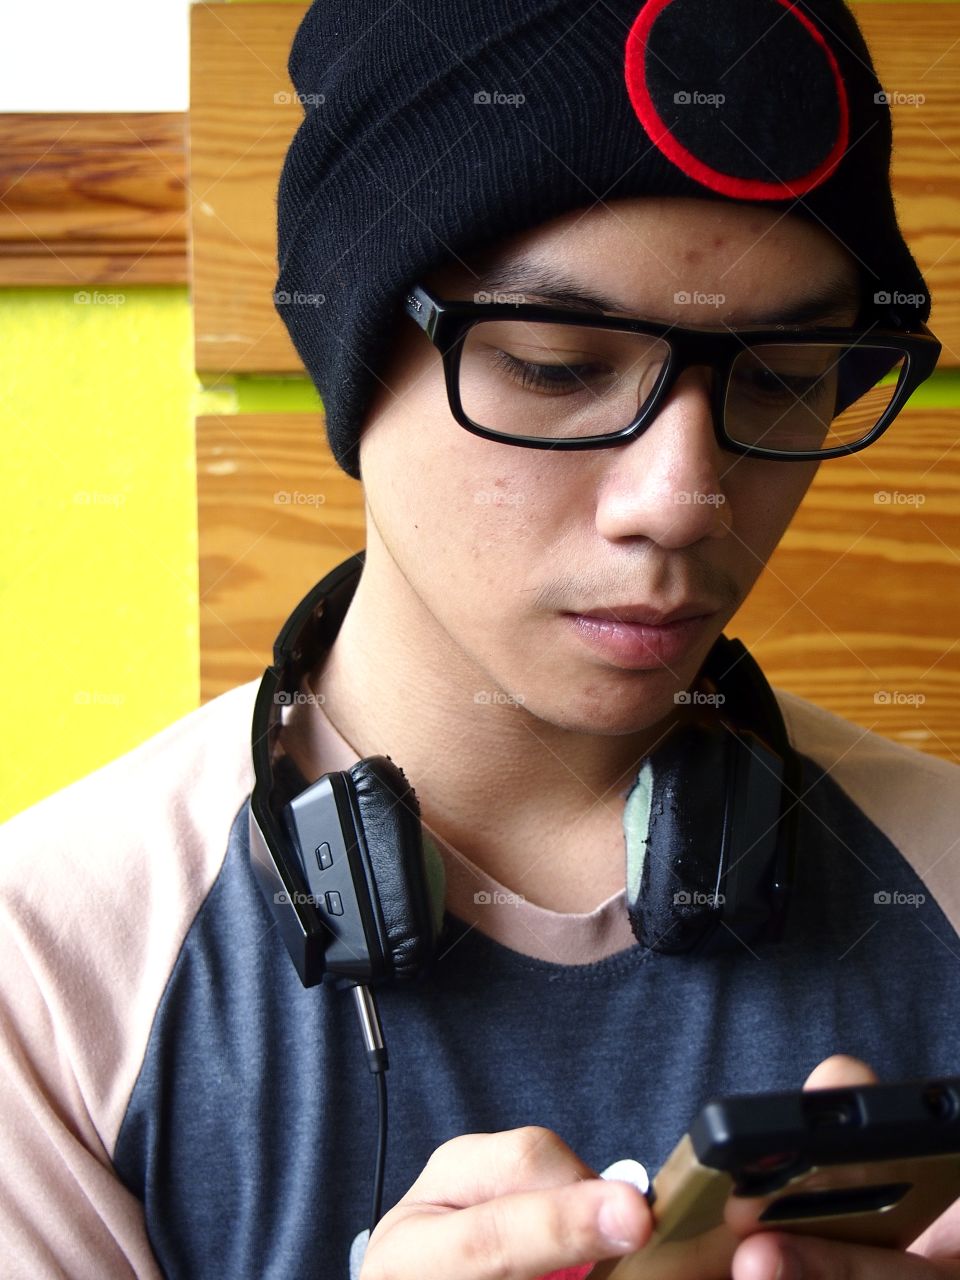 teenage boy wearing bonnet using a smartphone